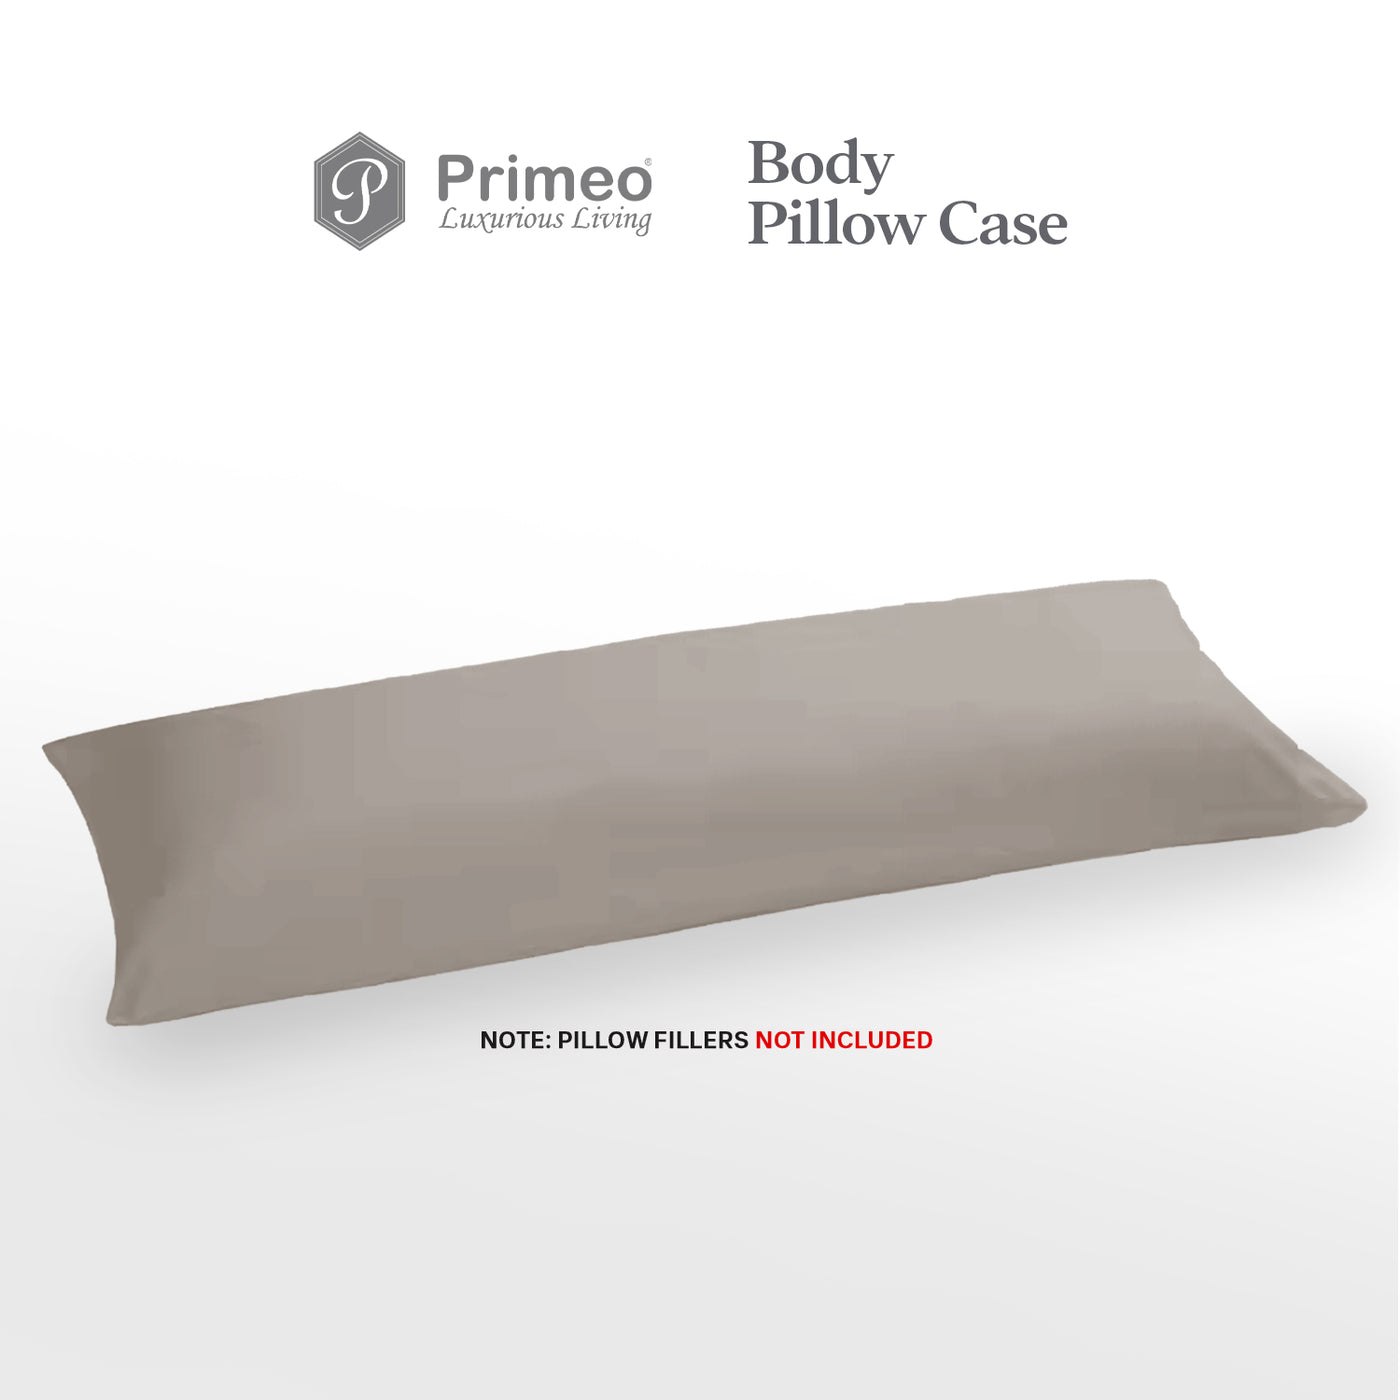 PRIMEO Premium Body Pillow Cover Standard Size